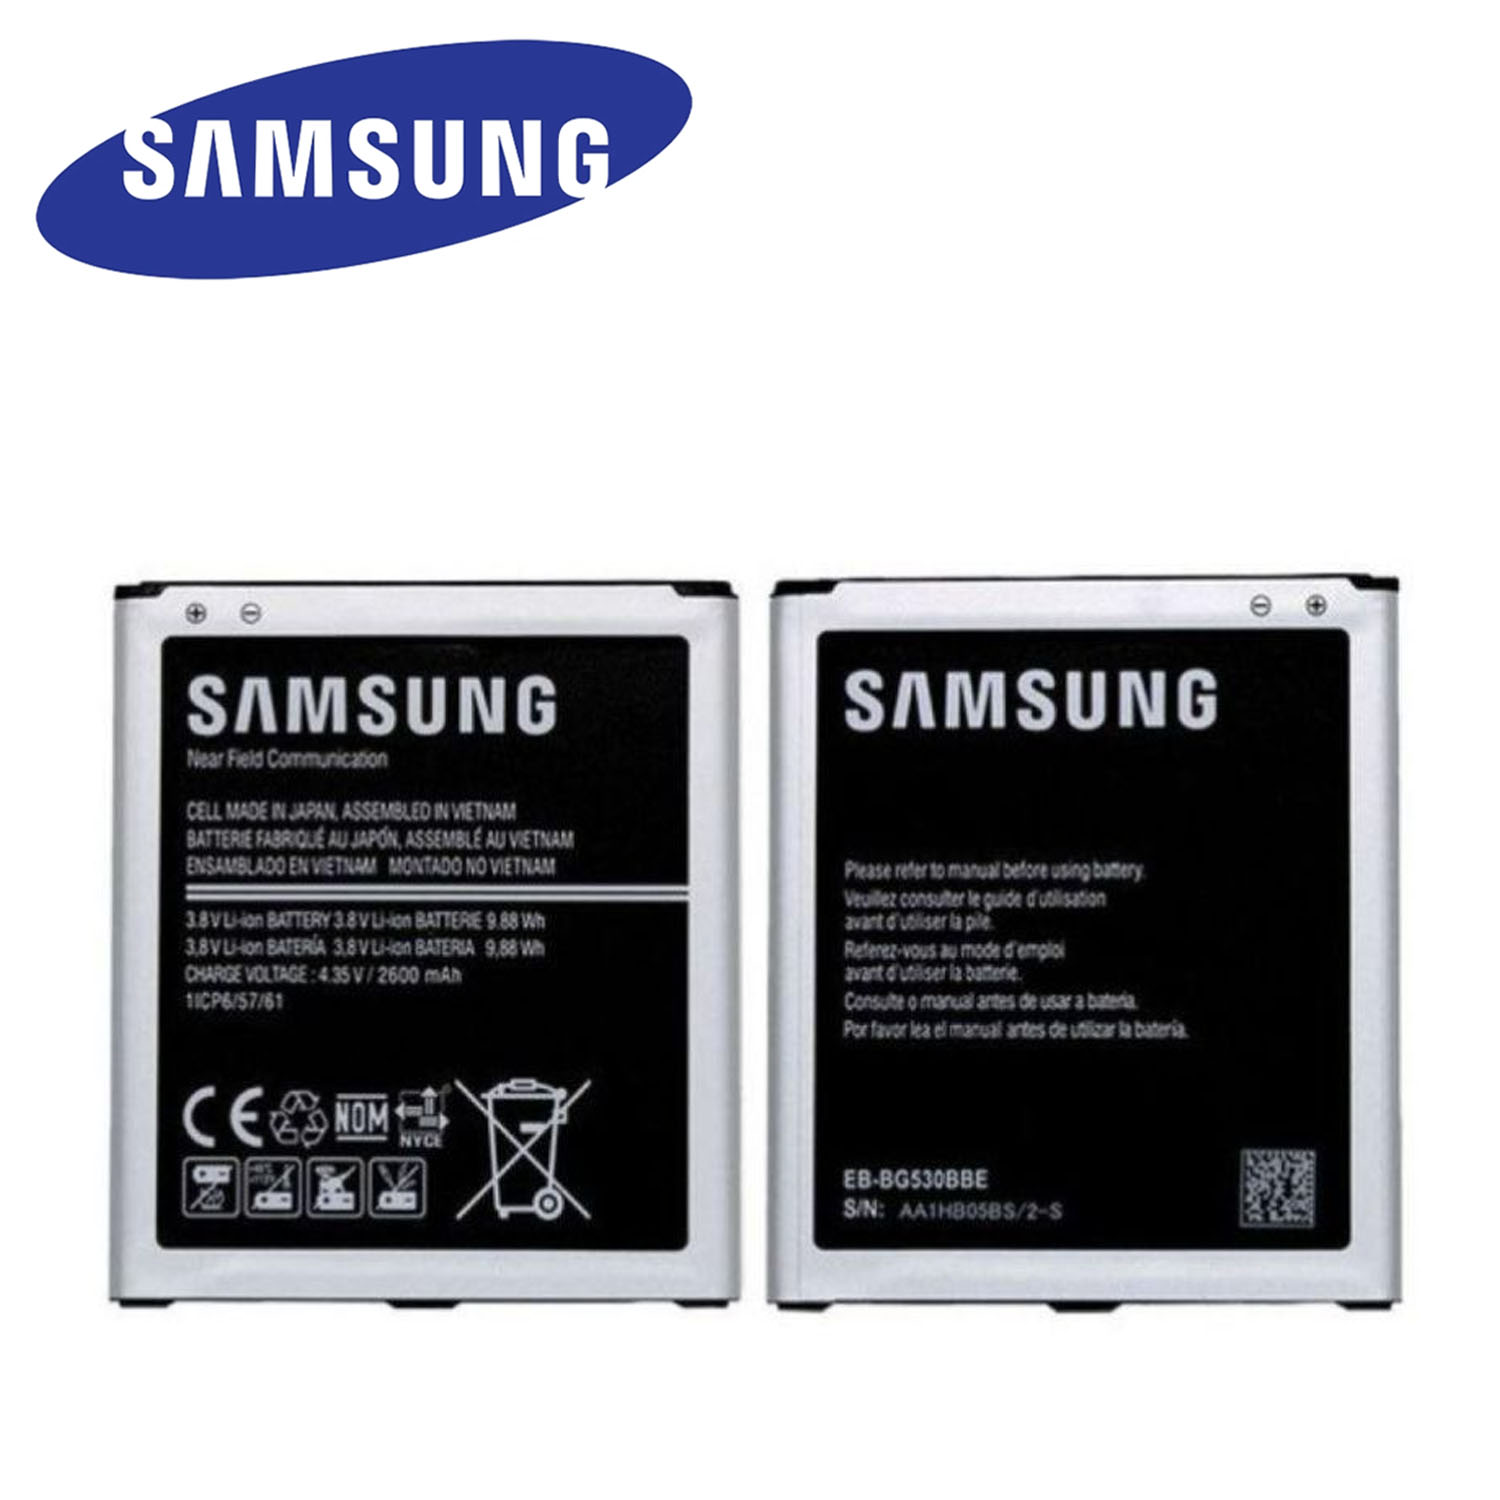 Samsung J2 Battery Cost Cheap Online Shopping